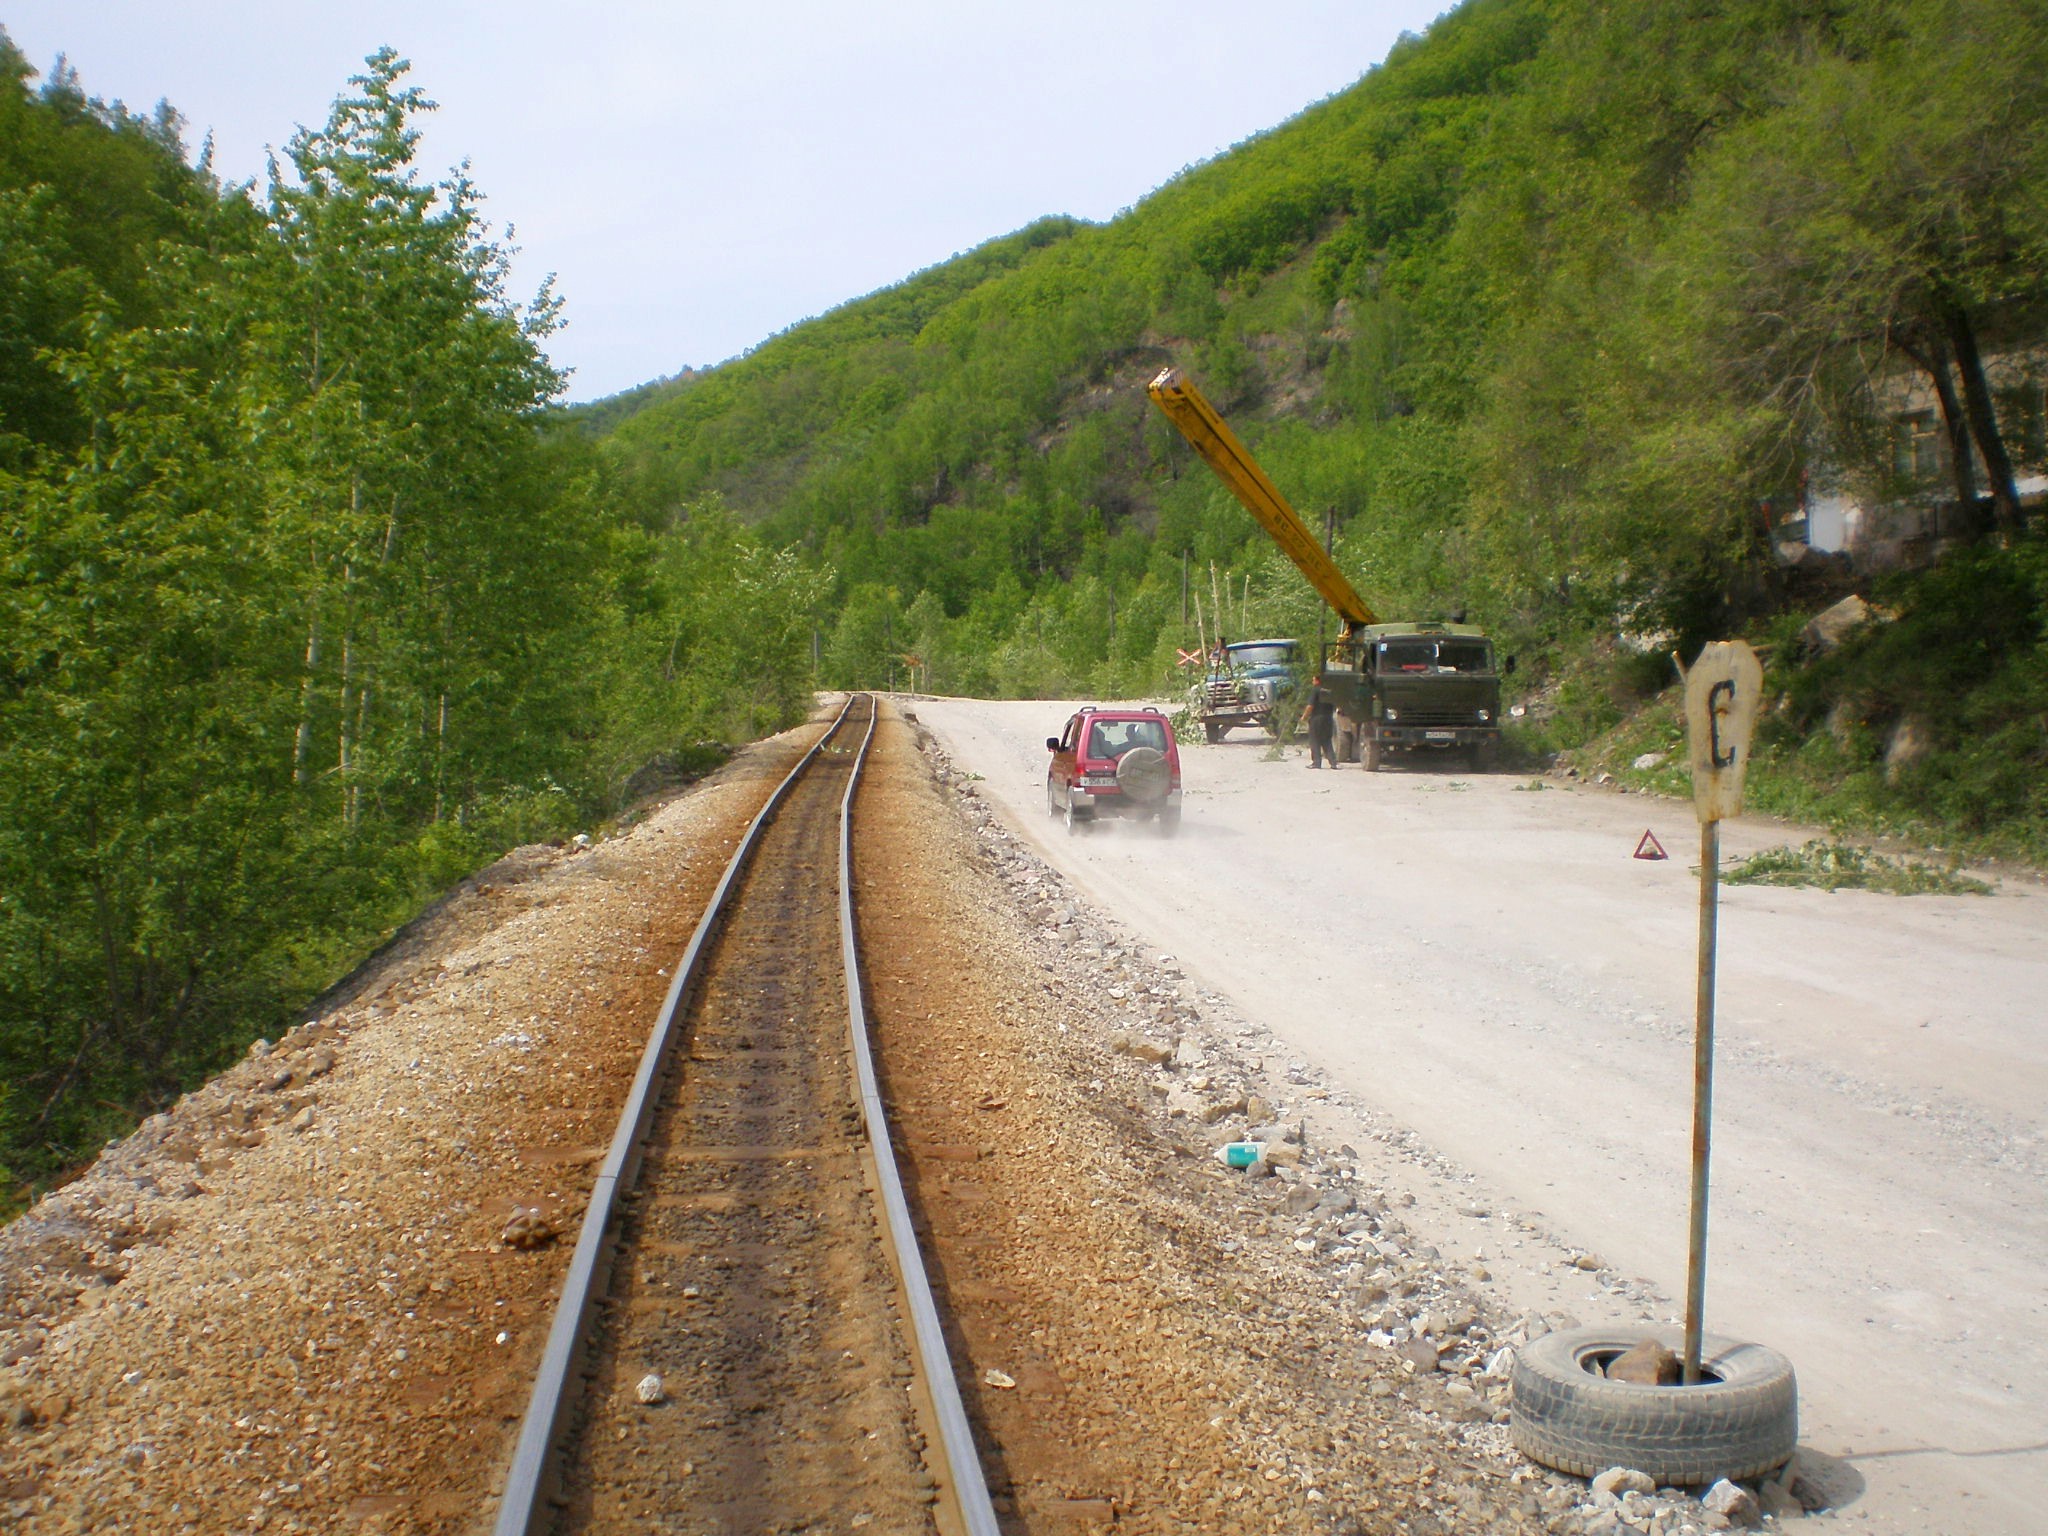 Тетюхинская узкоколейная железная дорога  —  фотографии, сделанные в 2008 году (часть 4)